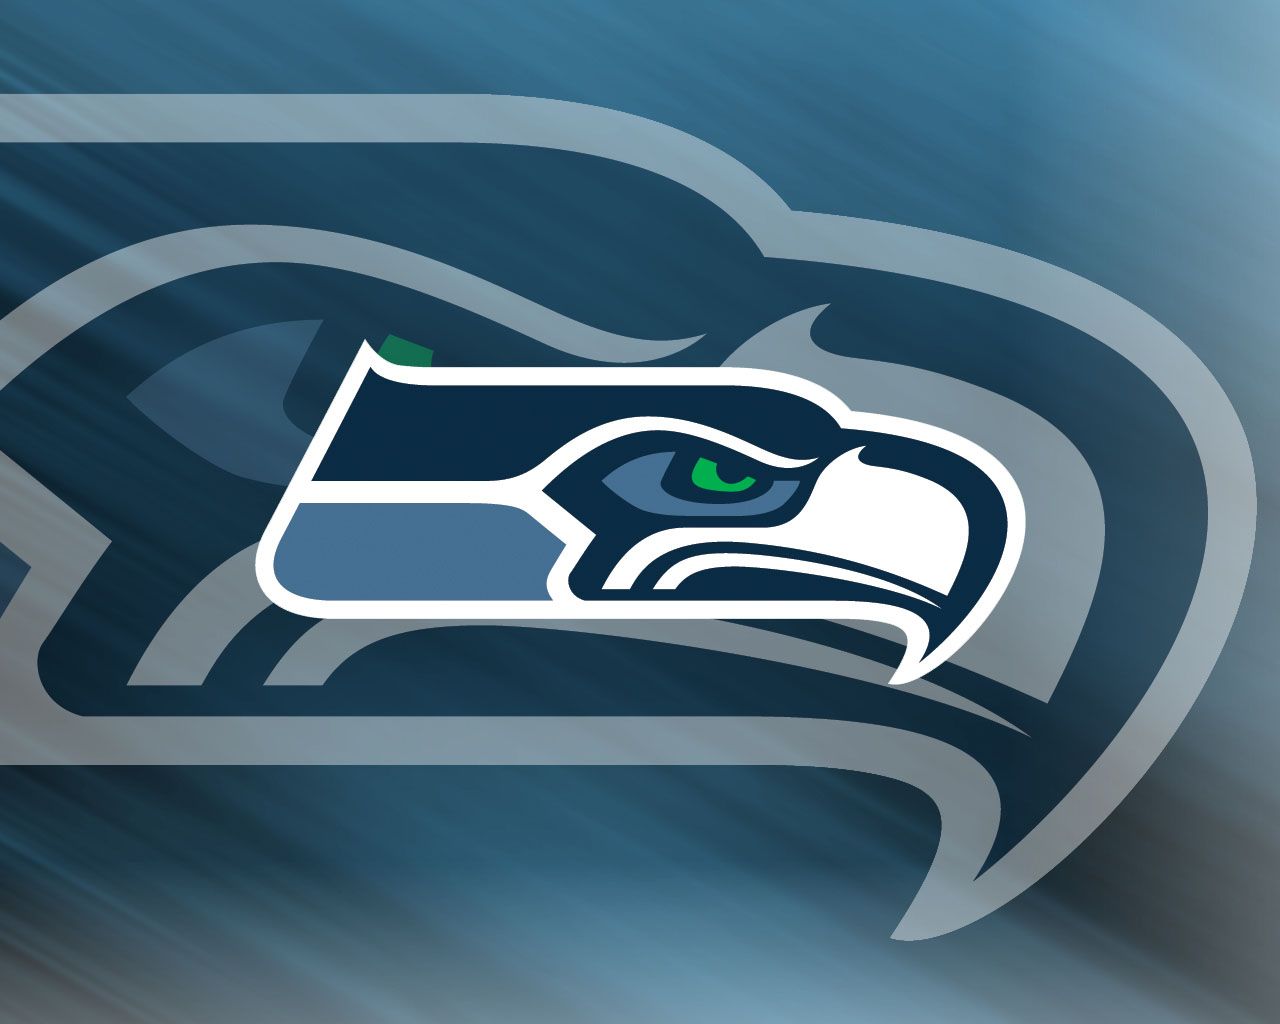 Football Wallpaper Seattle Seahawks Desktop Background